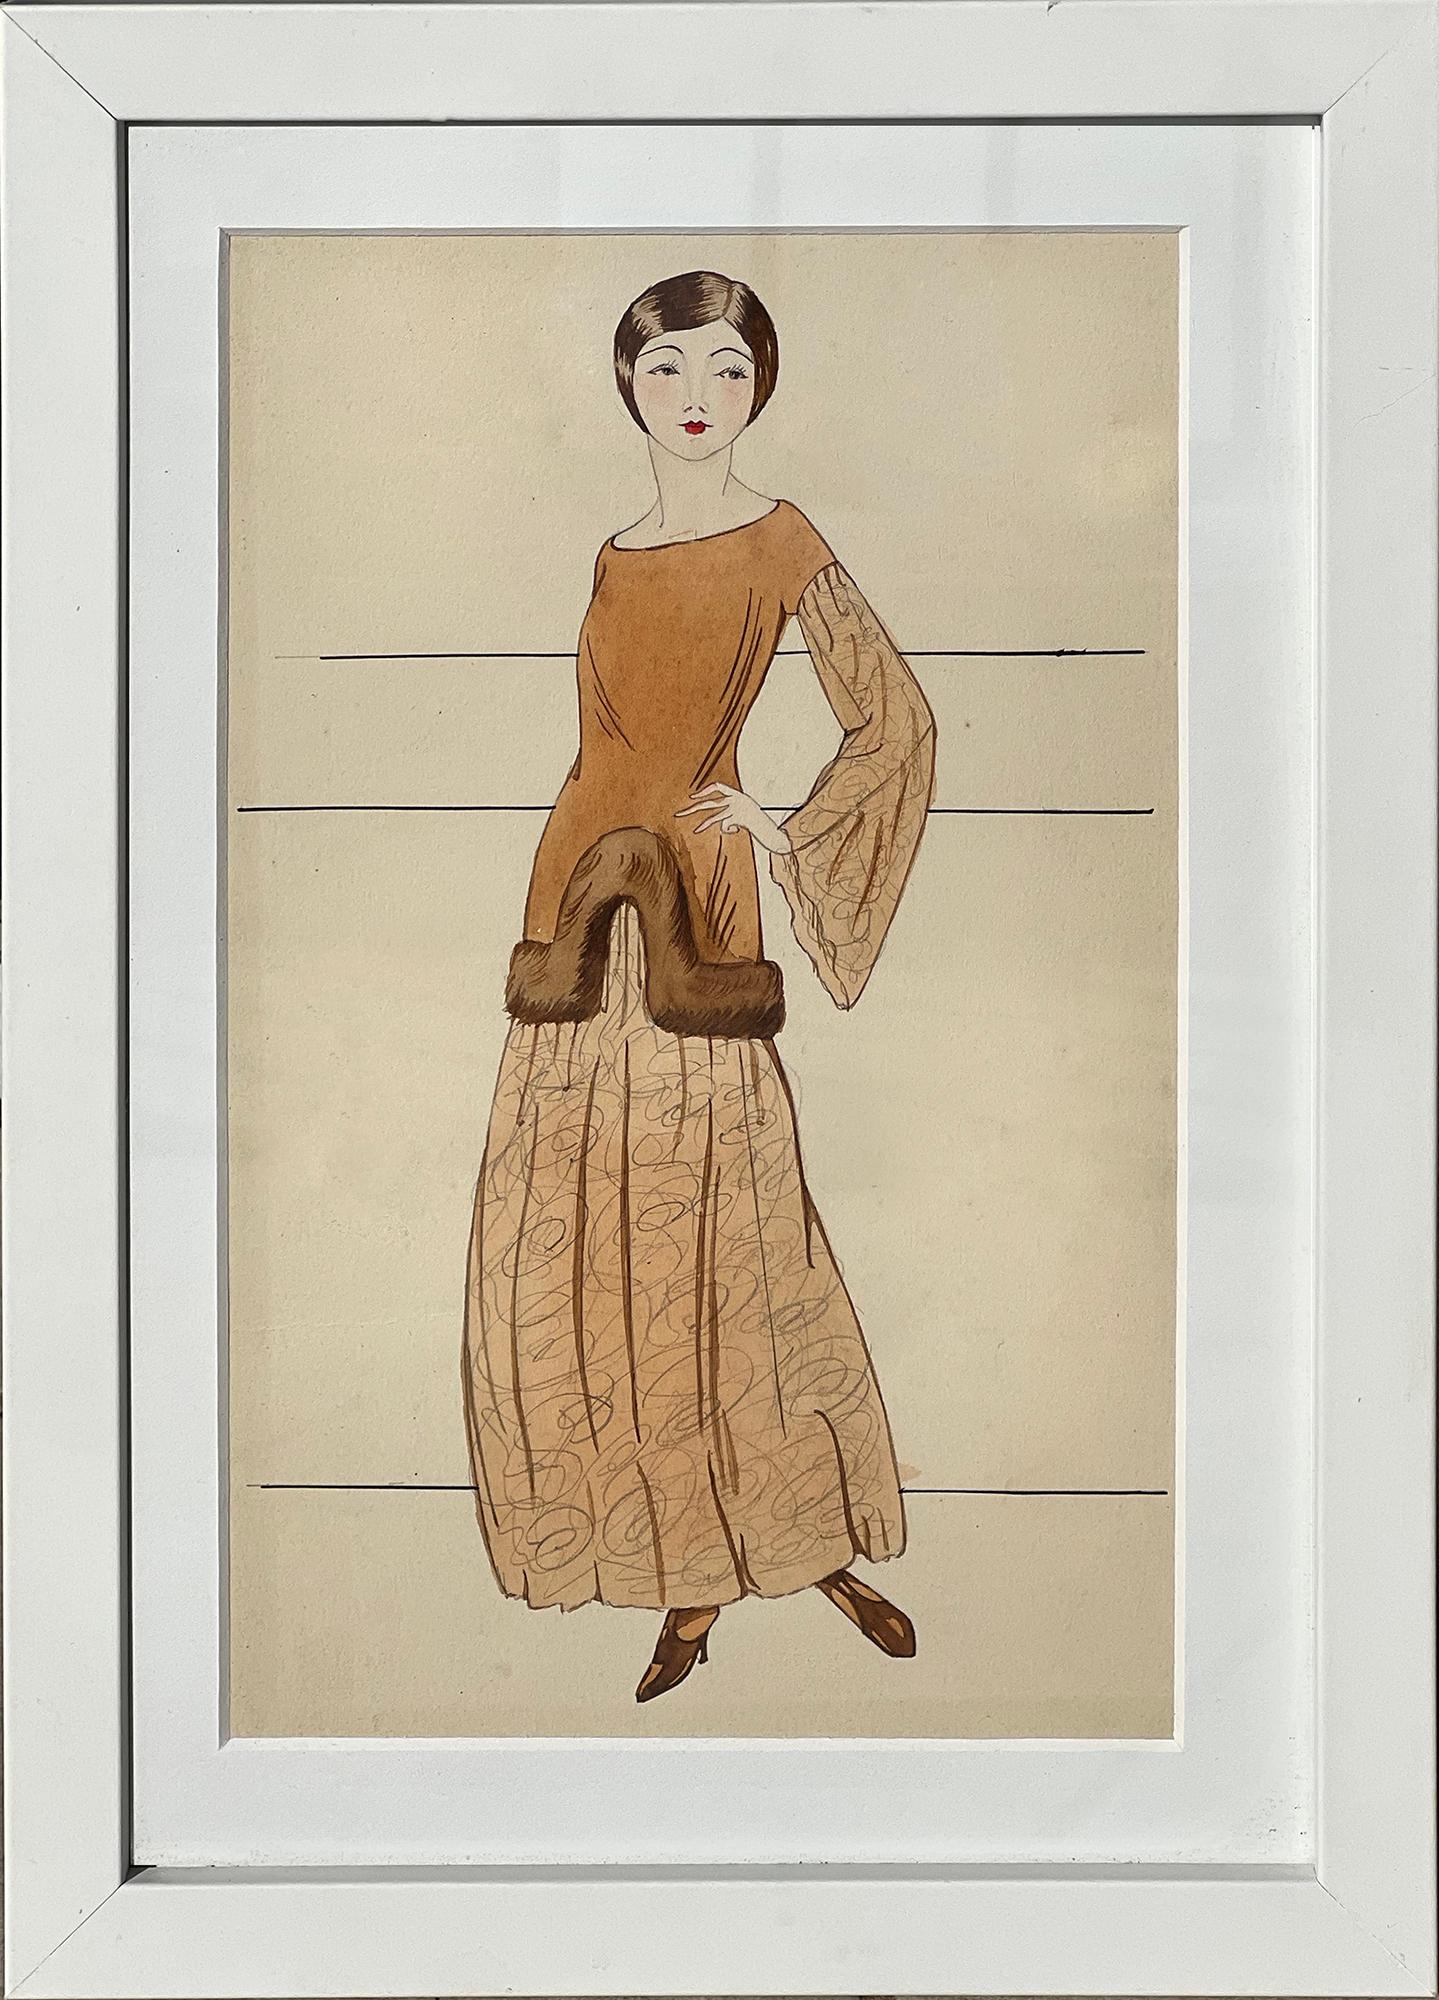 Original Vintage 1920's Tinte und Aquarell Mode-Illustration von aufgeführten New England Künstler Harriette (Nutting) Cooper (1901 - 2002). 
Die Illustration zeigt eine hübsche junge Flapper-Frau mit einer geraden Bob-Frisur im Stil der 1920er